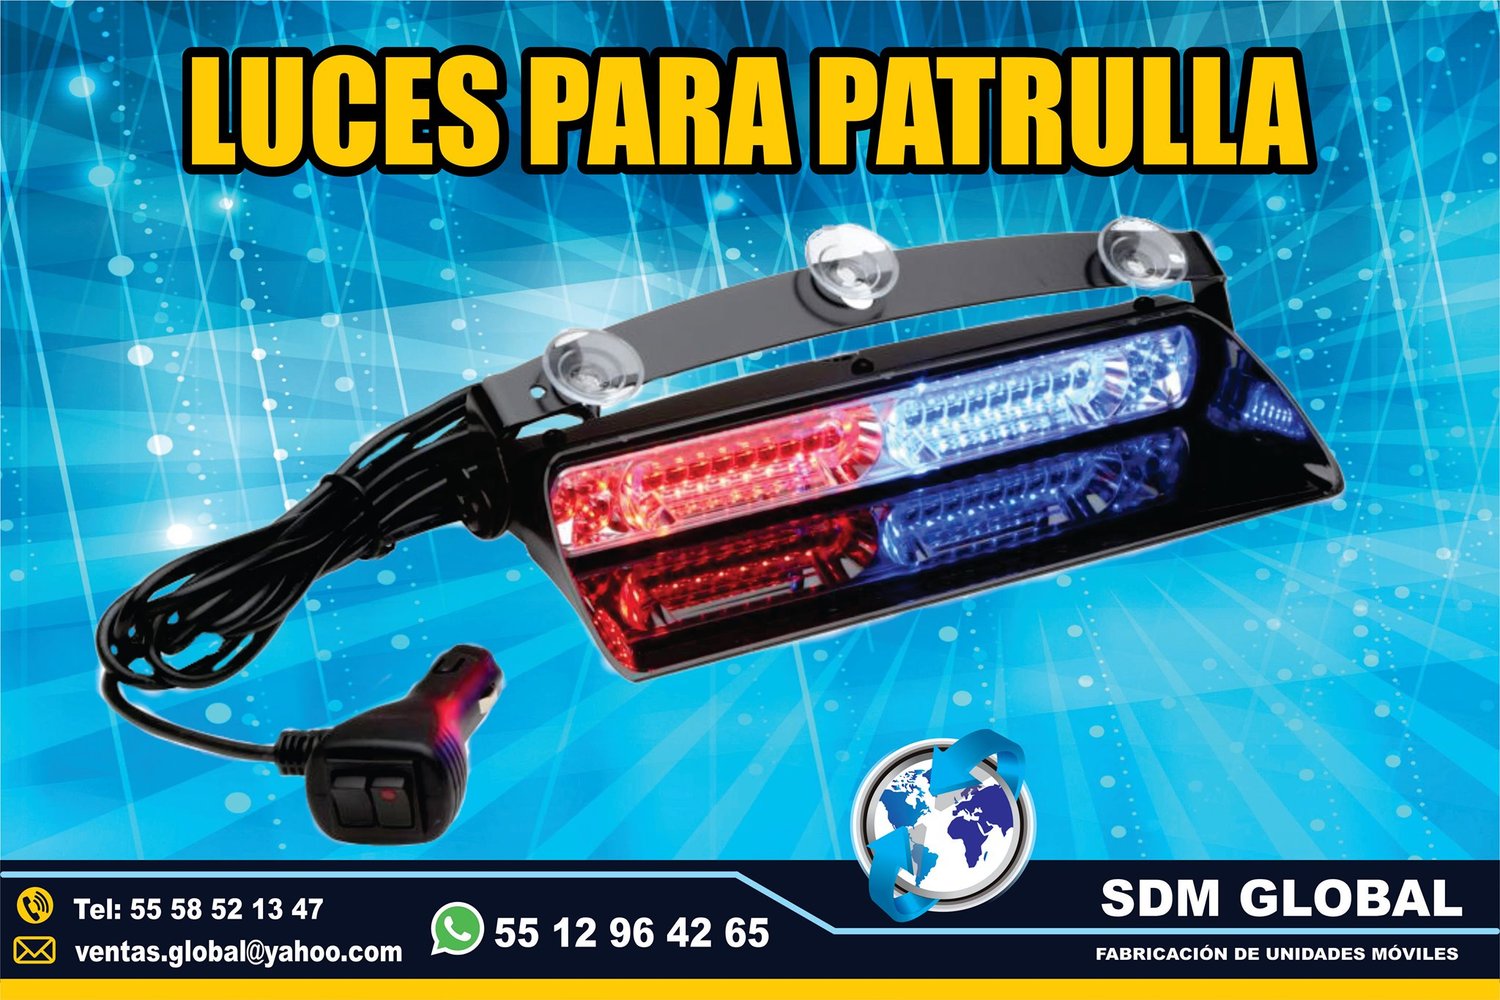 <span style="font-weight: bold;">Venta de Luces para patrullas rojo azul estroboticas</span><br>